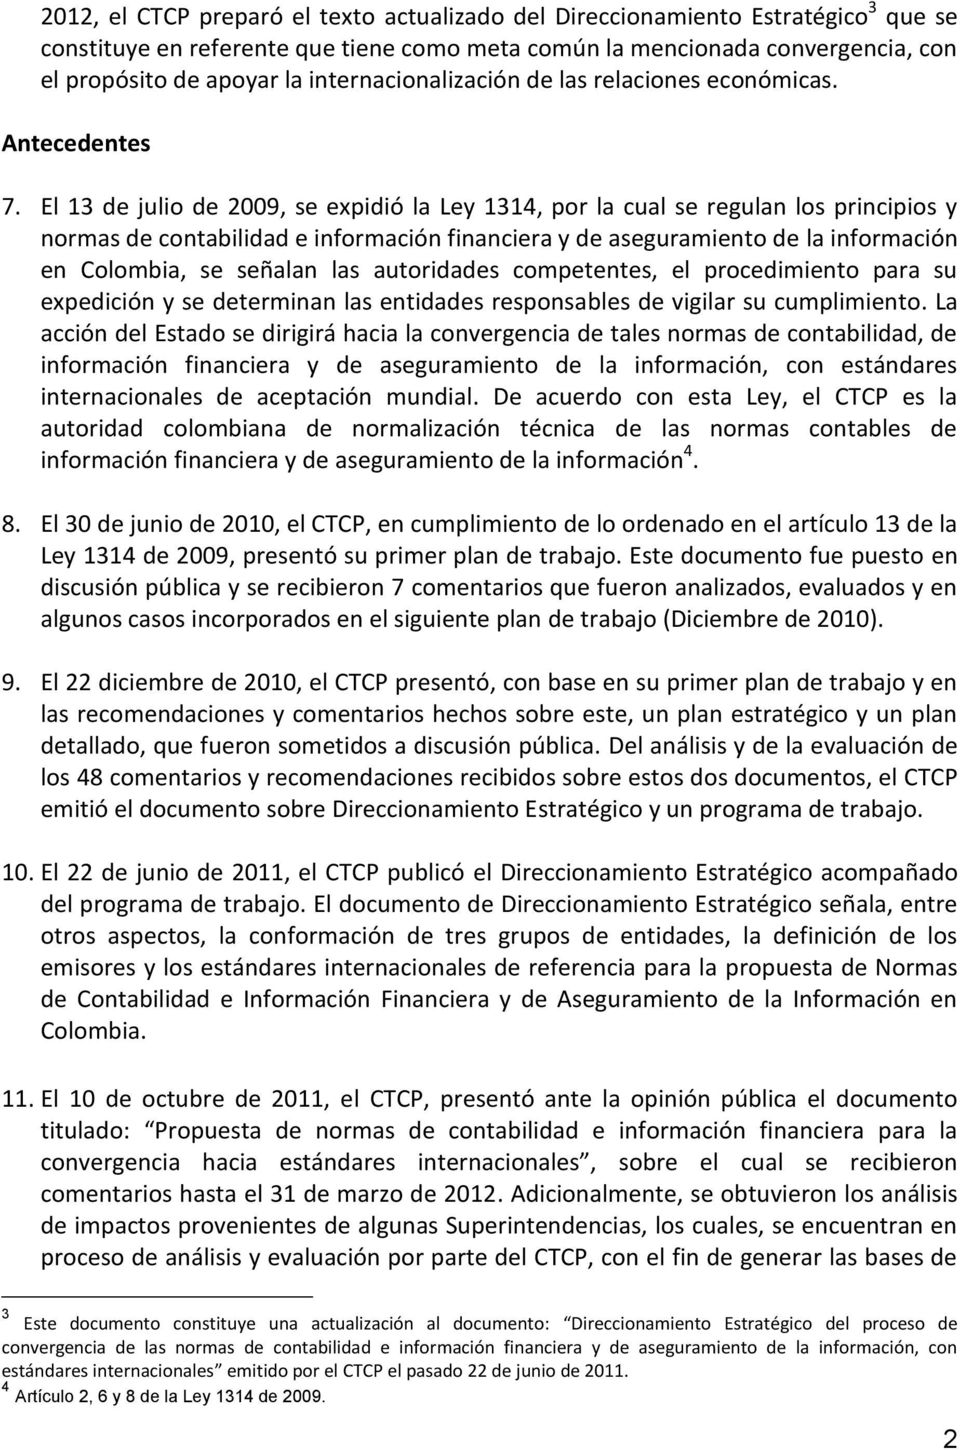 El 13 de julio de 2009, se expidió la Ley 1314, por la cual se regulan los principios y normas de contabilidad e información financiera y de aseguramiento de la información en Colombia, se señalan